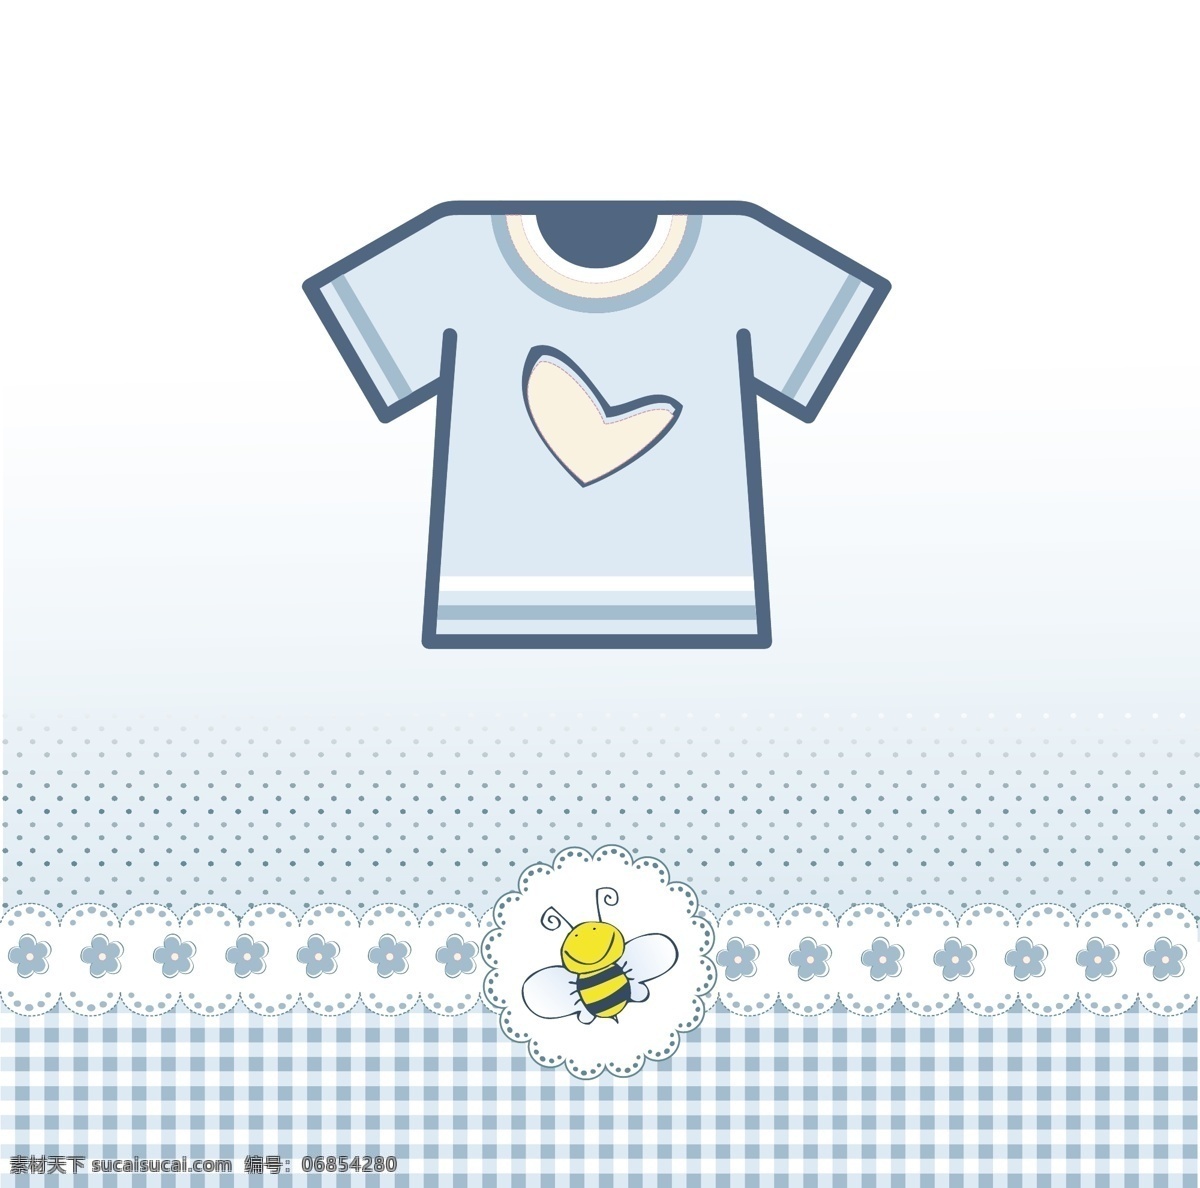 婴儿 沐浴 卡 蓝色 t 恤 花 宝贝的心 聚会 邀请 鲜花 卡片 婴儿淋浴 花边 蓝色的衬衫 可爱的蜜蜂 庆典 新 t恤衫 t恤 请柬 淋浴 可爱 白色